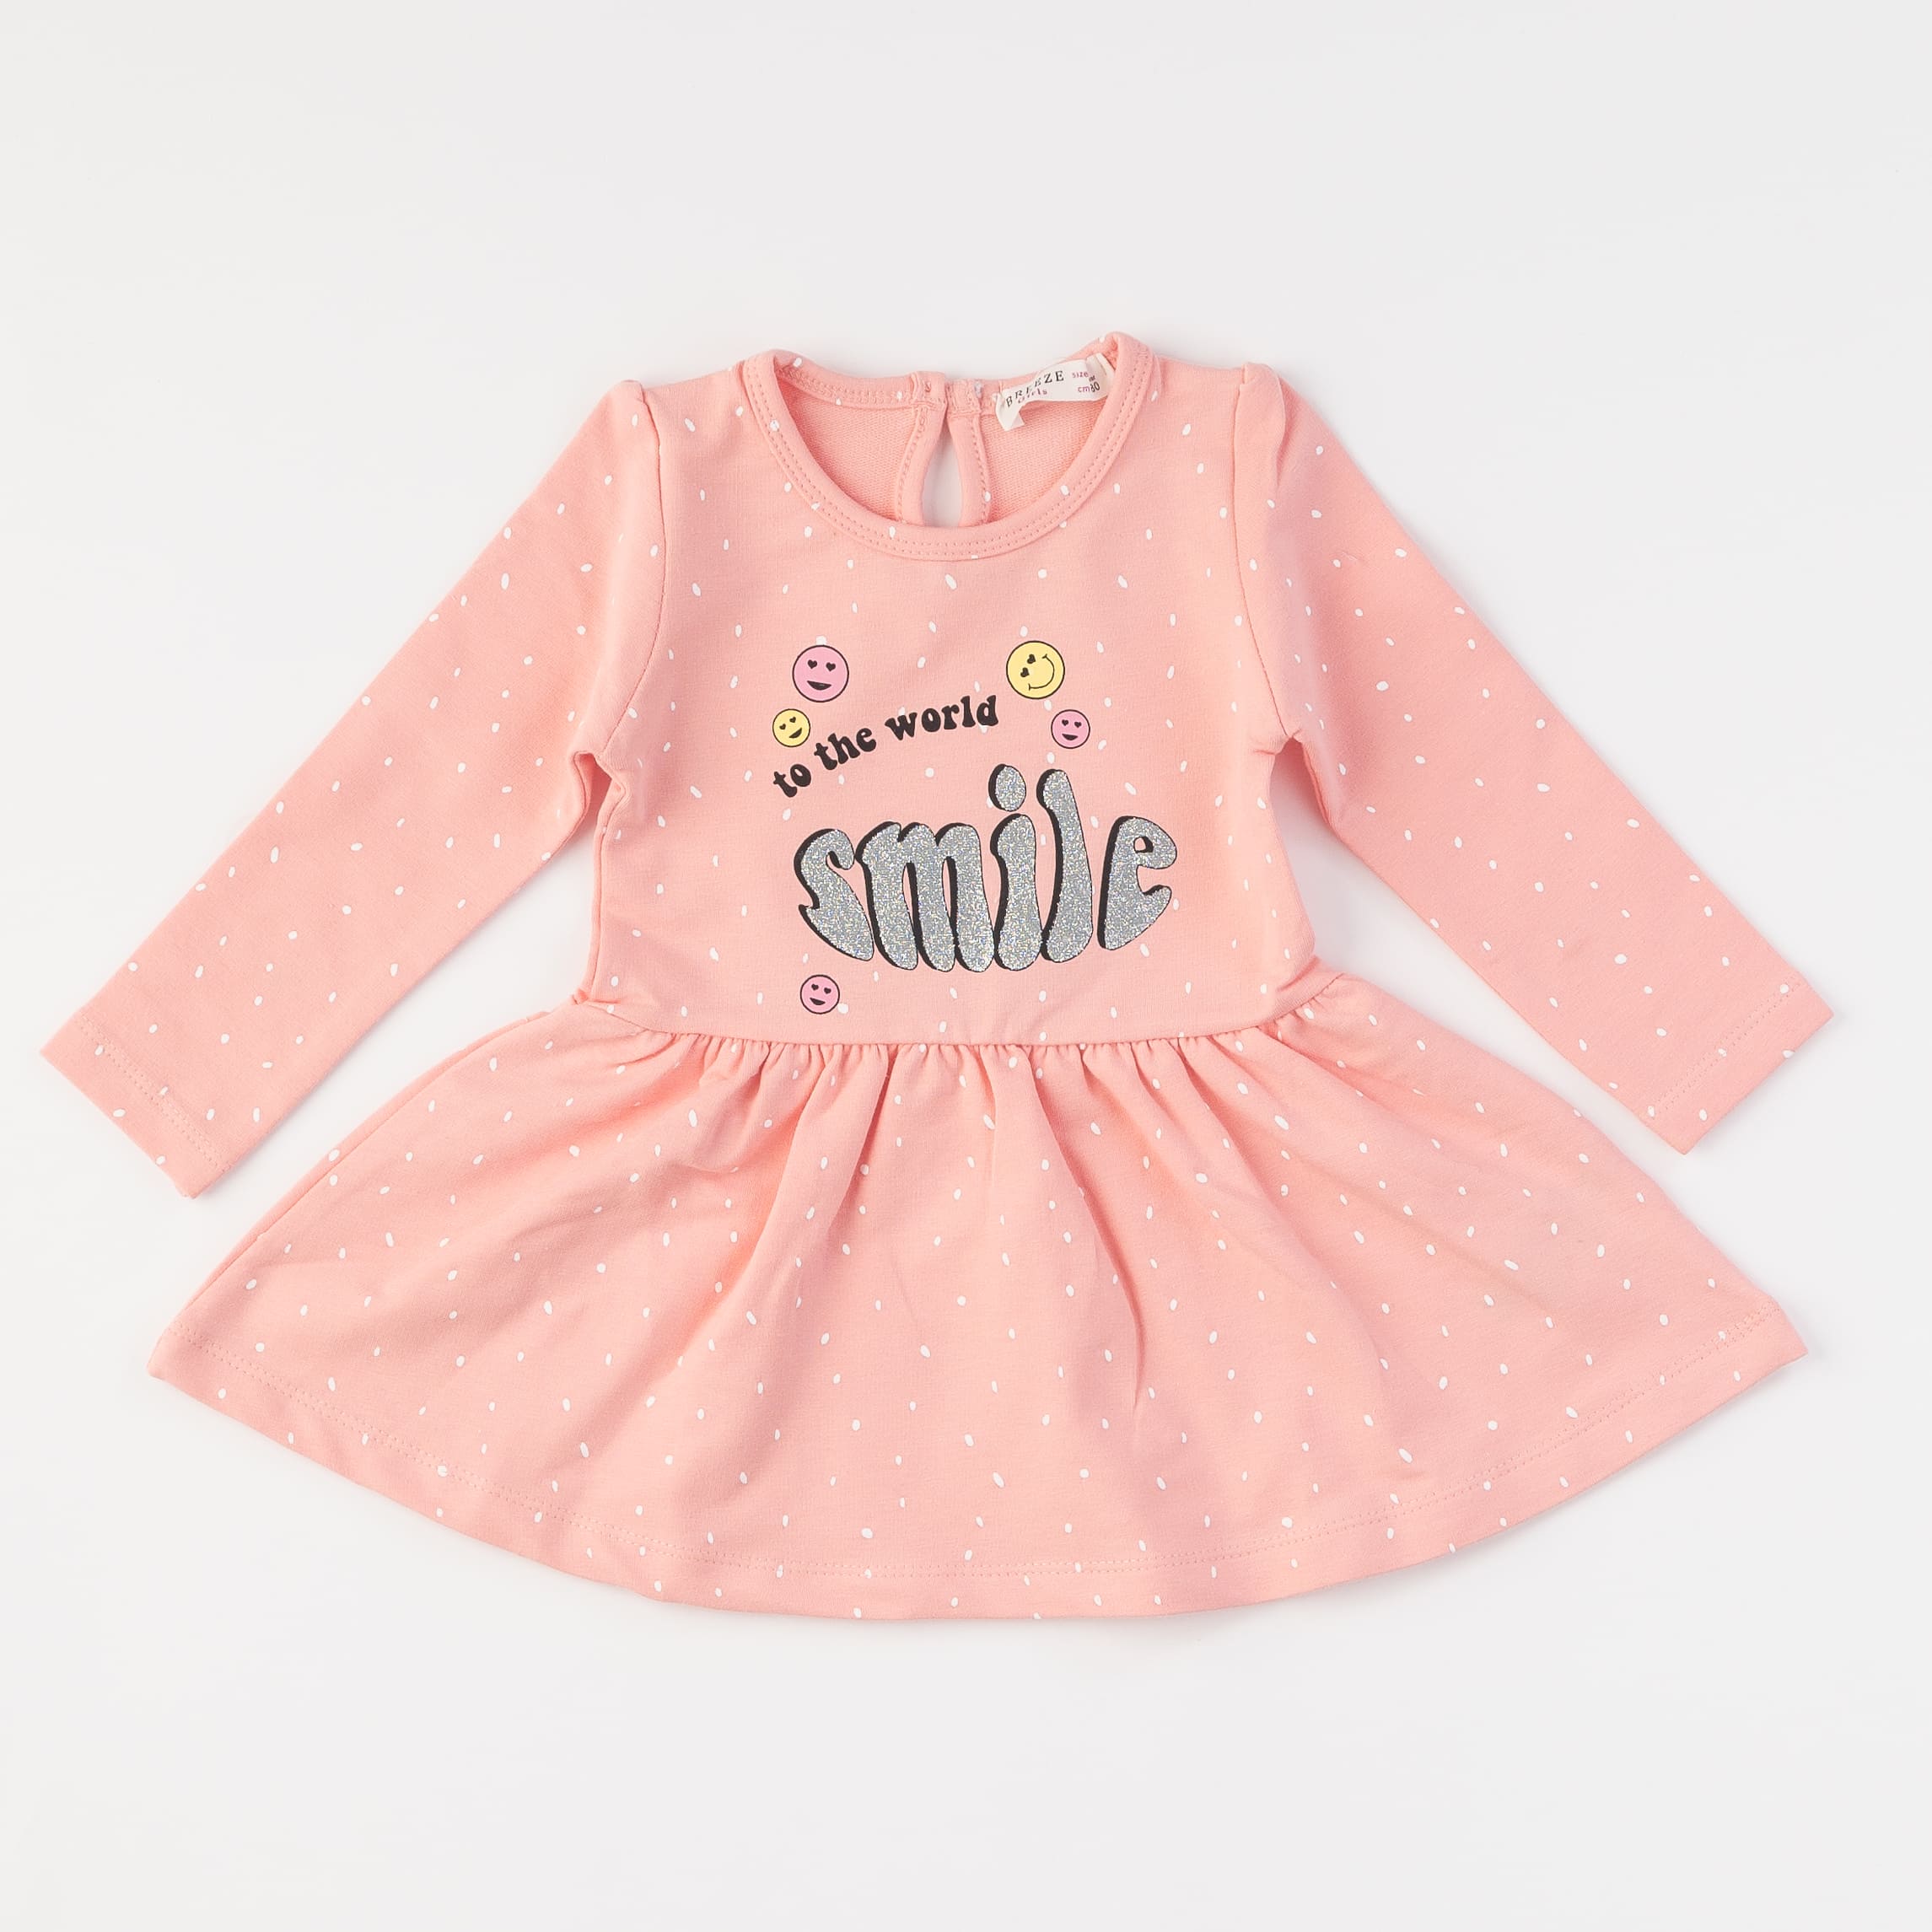 Παιδικο φορεμα με μακρυ μανικι  Breeze Smile to the world  Ροζε